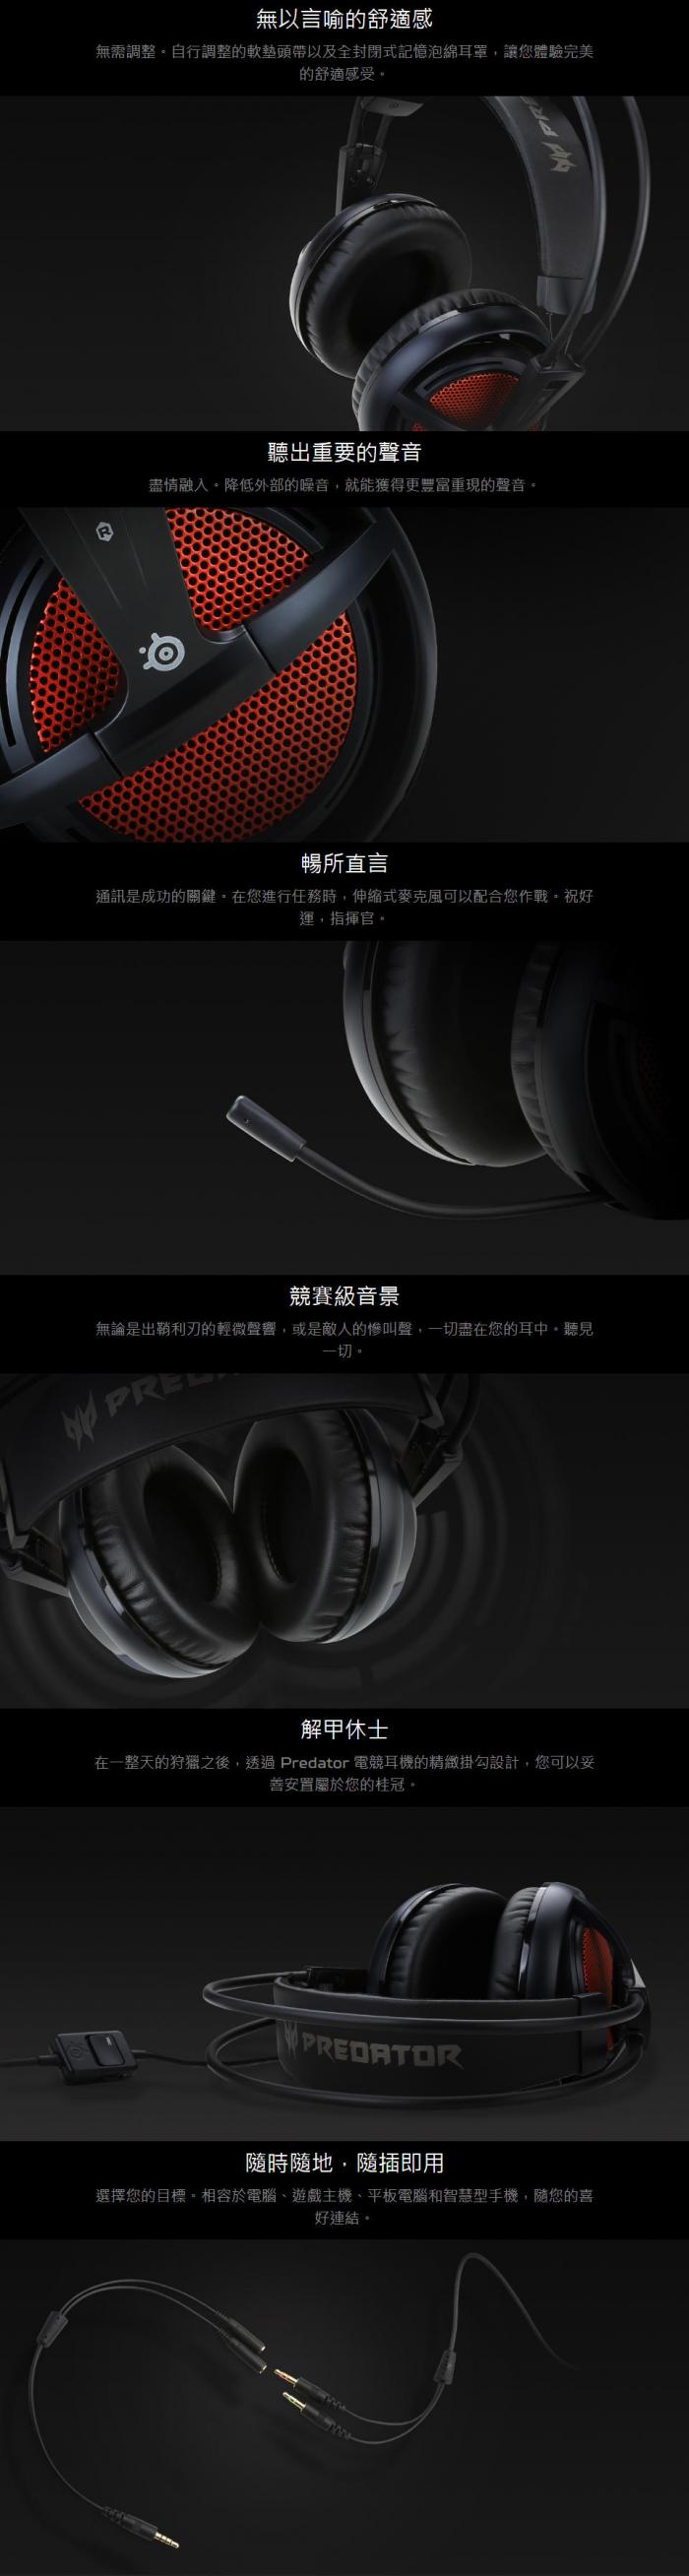 Acer Predator Gaming Headset 電競耳機 黑紅 (powered by steelseries)